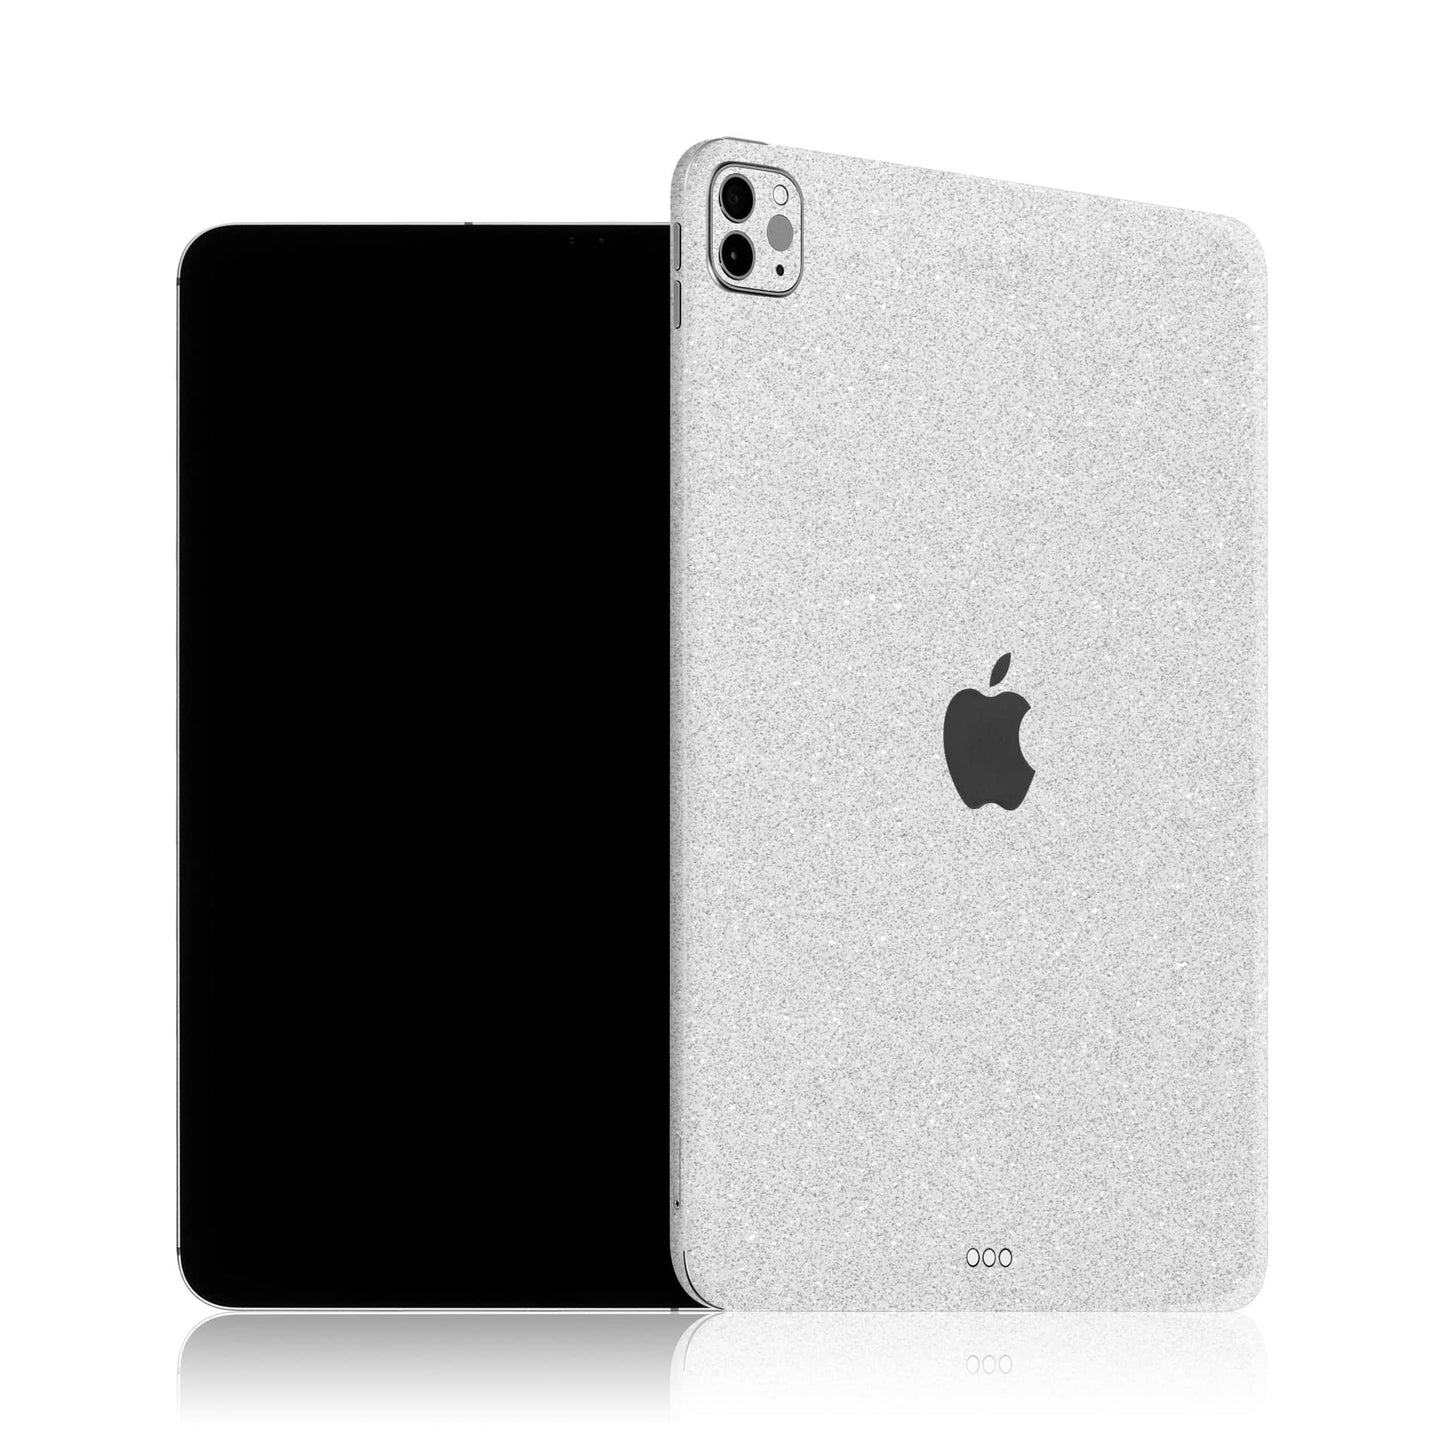 iPad Pro 11" (2020) - Diamond